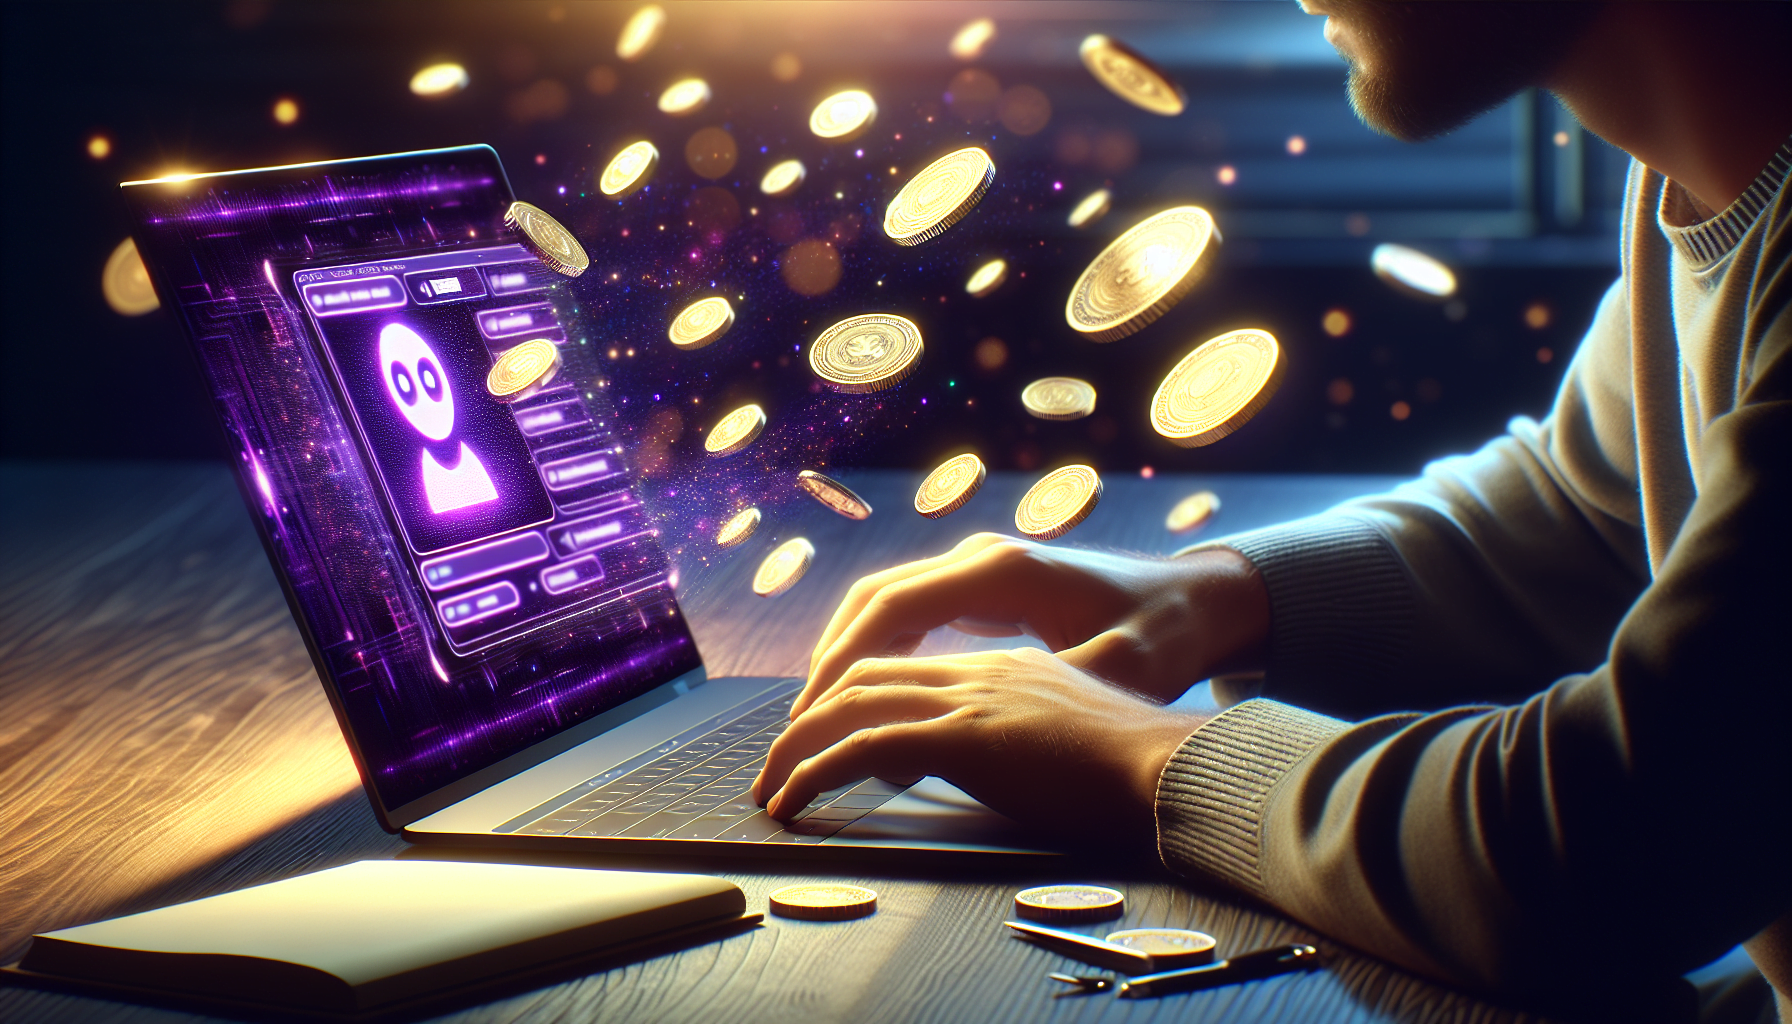 homme tapant sur ordinateur portable moderne avec interface assistant chat violet et pieces monnaie dorees levitant autour